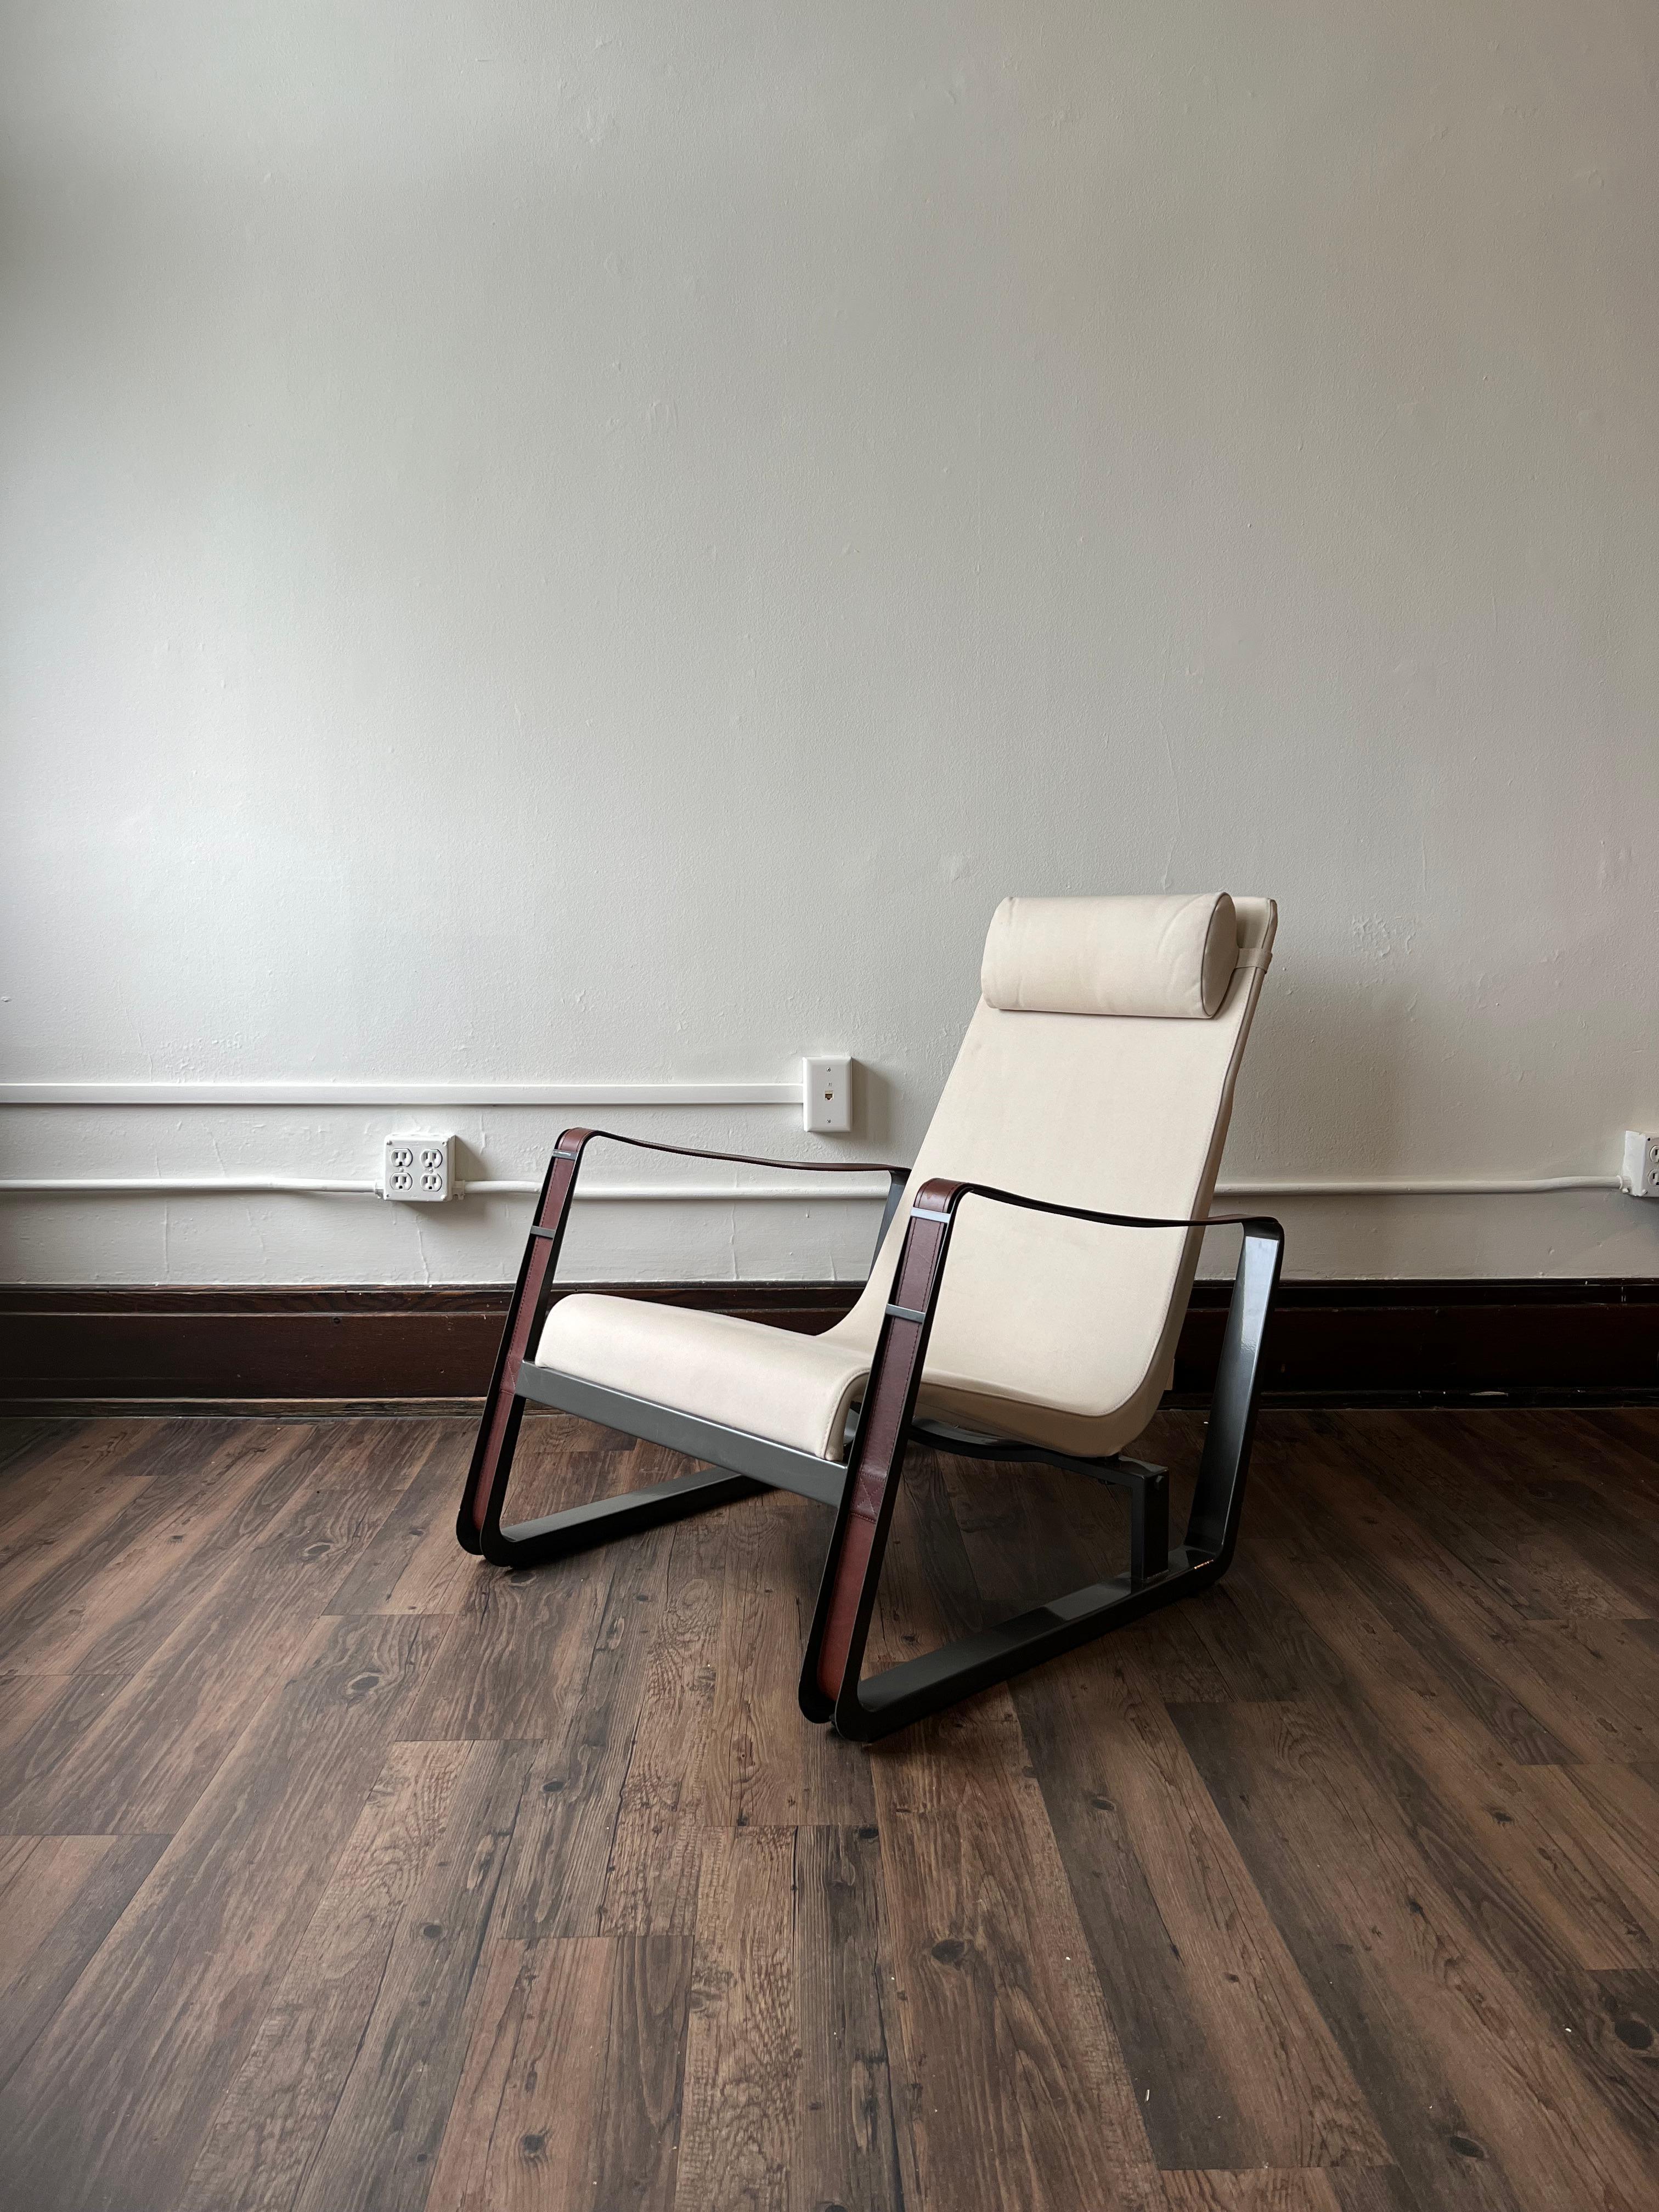 Le fauteuil Cité est l'un des premiers meubles conçus par Prouvé et il s'intègre parfaitement dans la maison moderne où Prouvé lui-même l'a utilisé. Jean Prouvé était un 